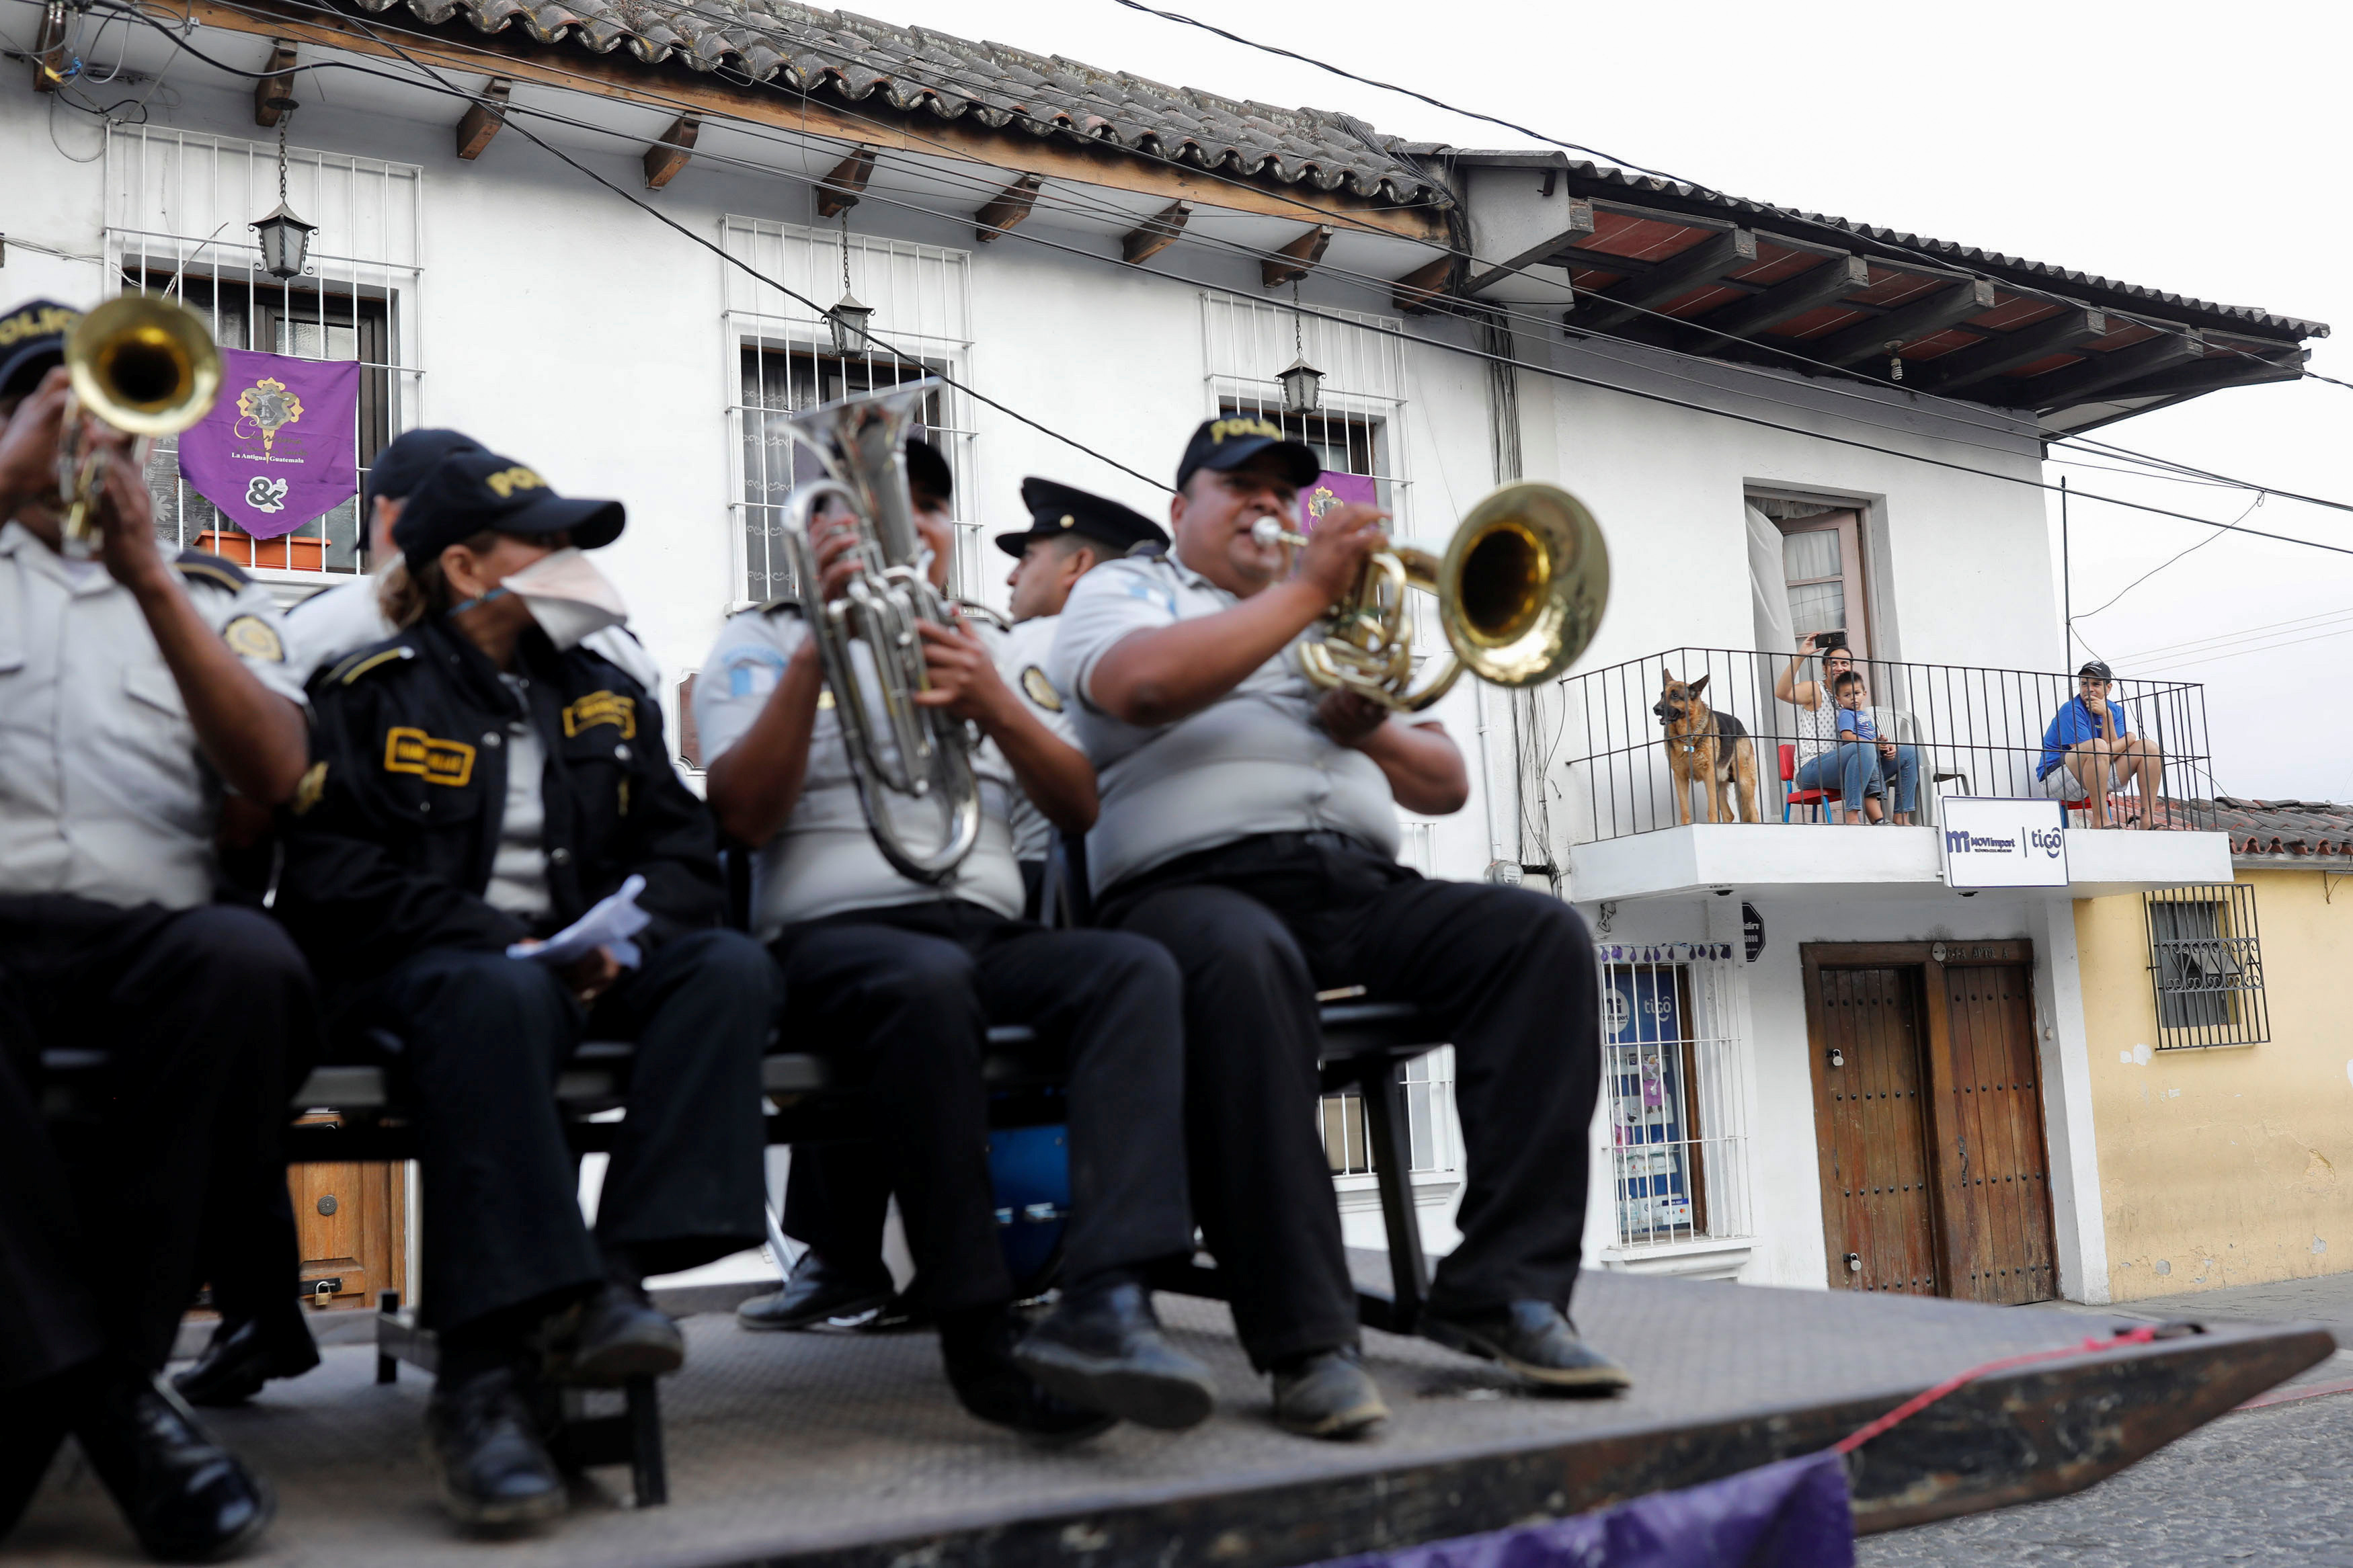 الفرقة الموسيقية التابعة للشرطة تقدم عروضا في الشارع في جواتيمالا سيتي  (1)